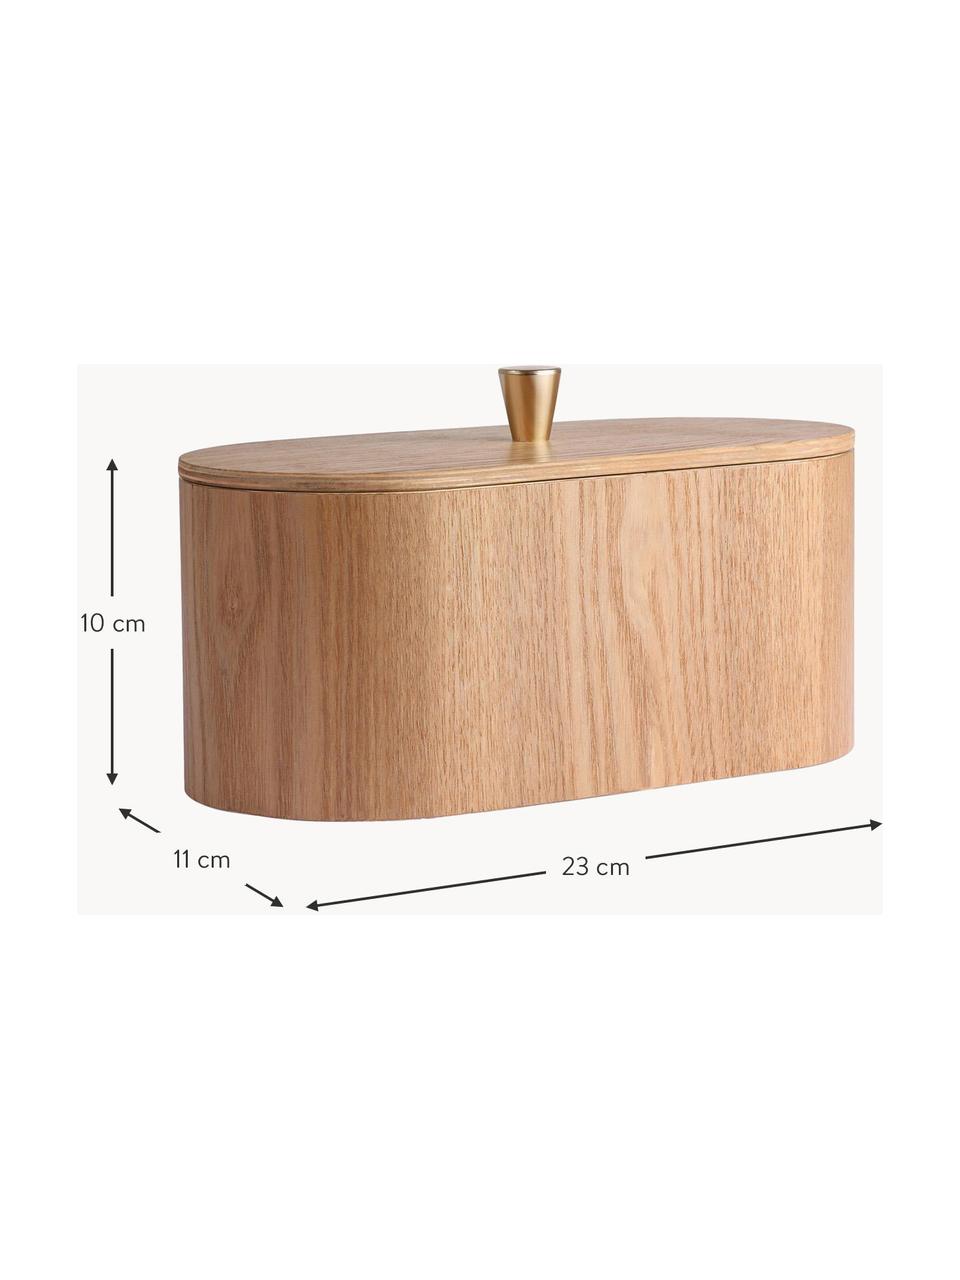 Holz-Aufbewahrungsbox Willow, Box: Weidenholz, Griff: Messing, Weidenholz, B 23 x H 10 cm